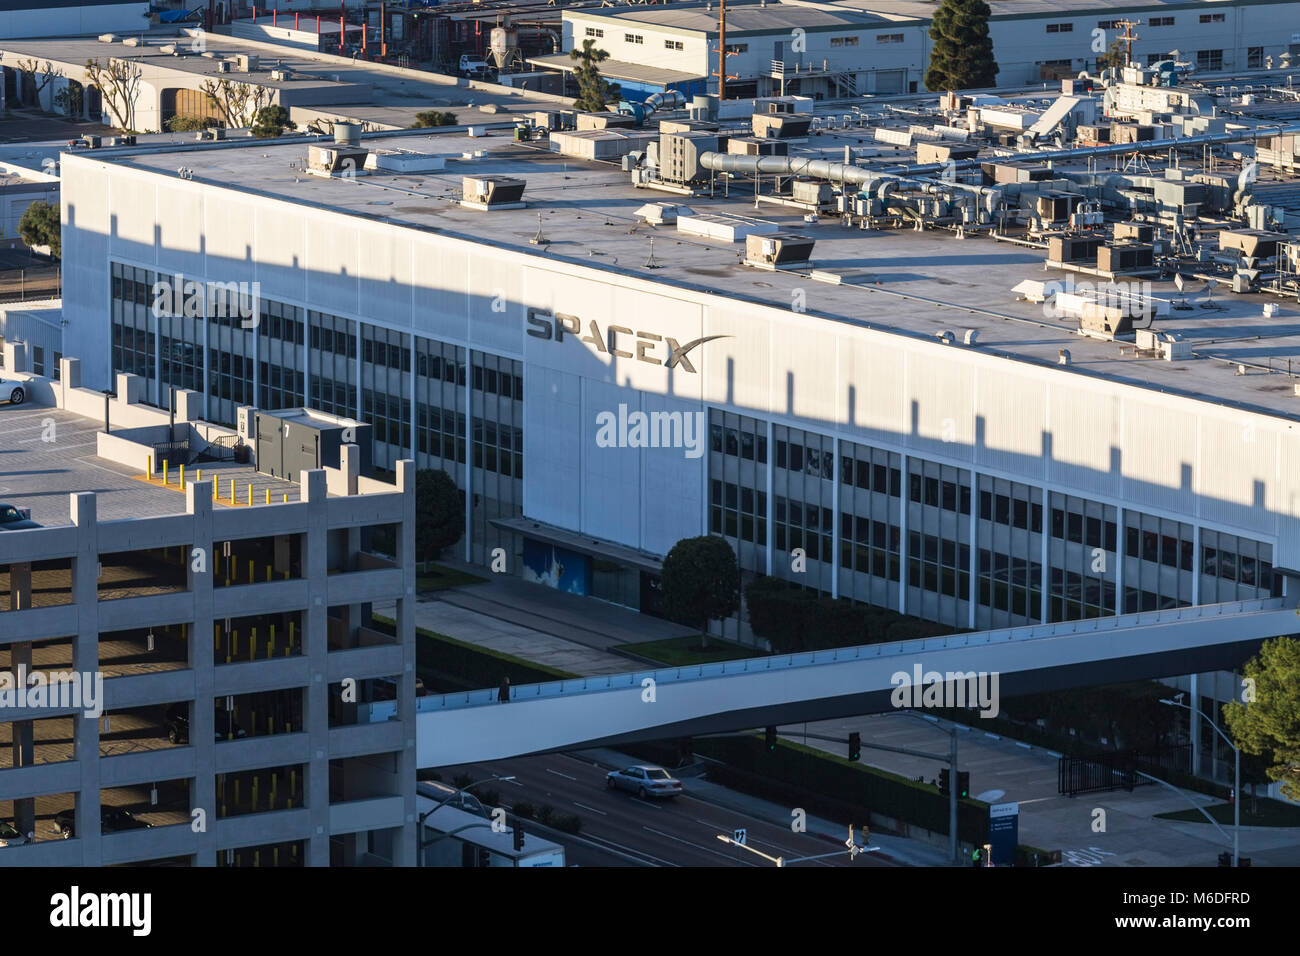 Hawthorne, Californie, USA - 20 Février 2018 : Vue aérienne de l'administration centrale et de la fusée SPACEX bâtiment de fabrication. Banque D'Images